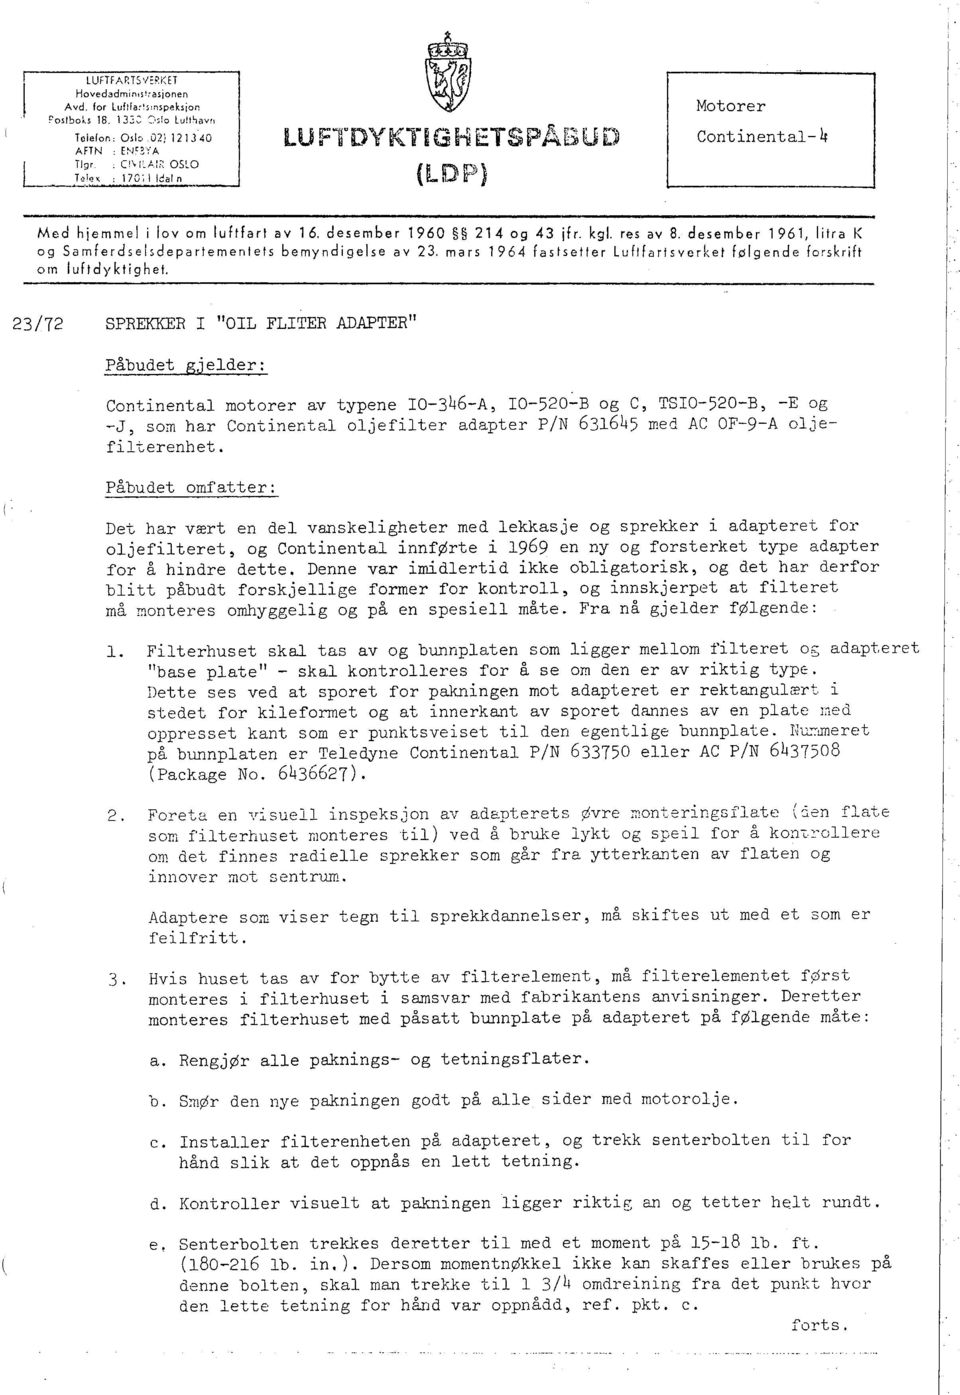 res av 8, desember 1961, litra K og Samferdseisdepartementets bemyndigelse av 23, mars 1964 fastsetter Luftfartsverket følgende forskrift om lufidyktighet.